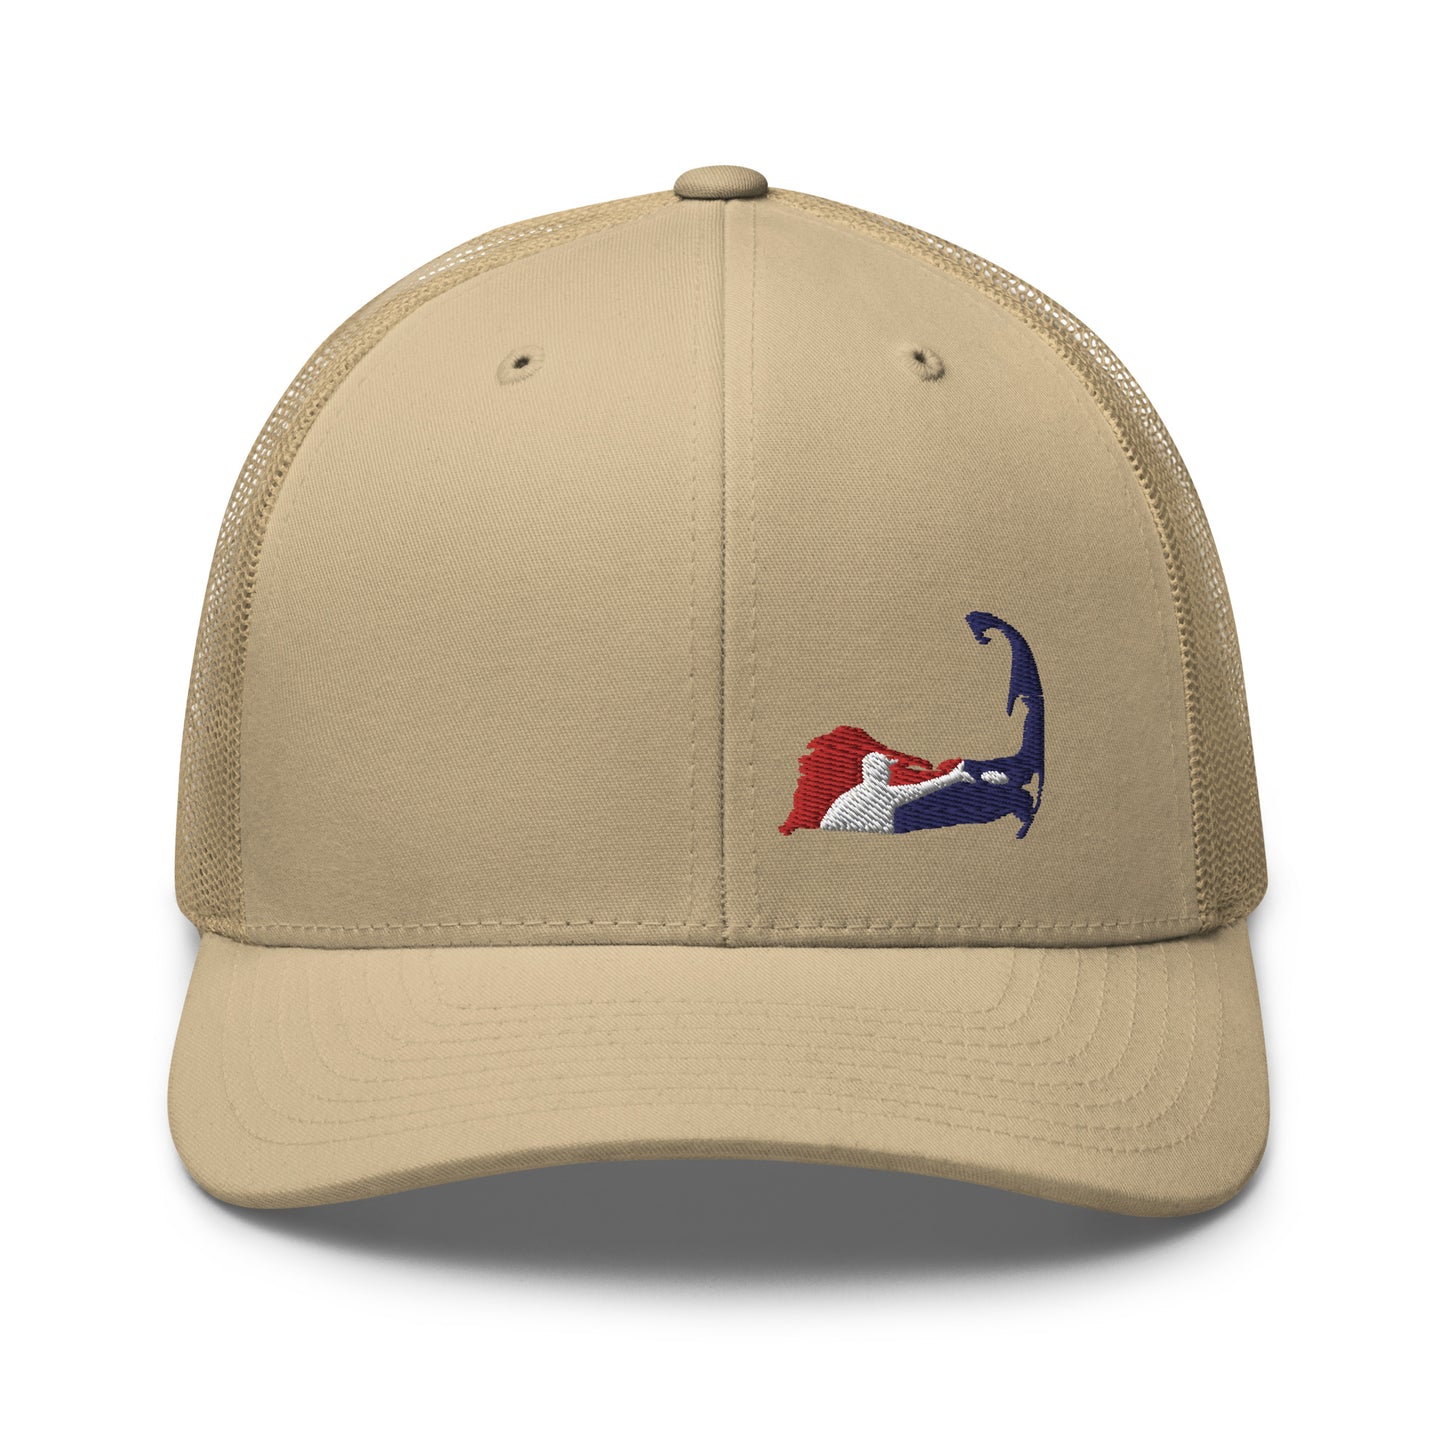 The Trucker Cap